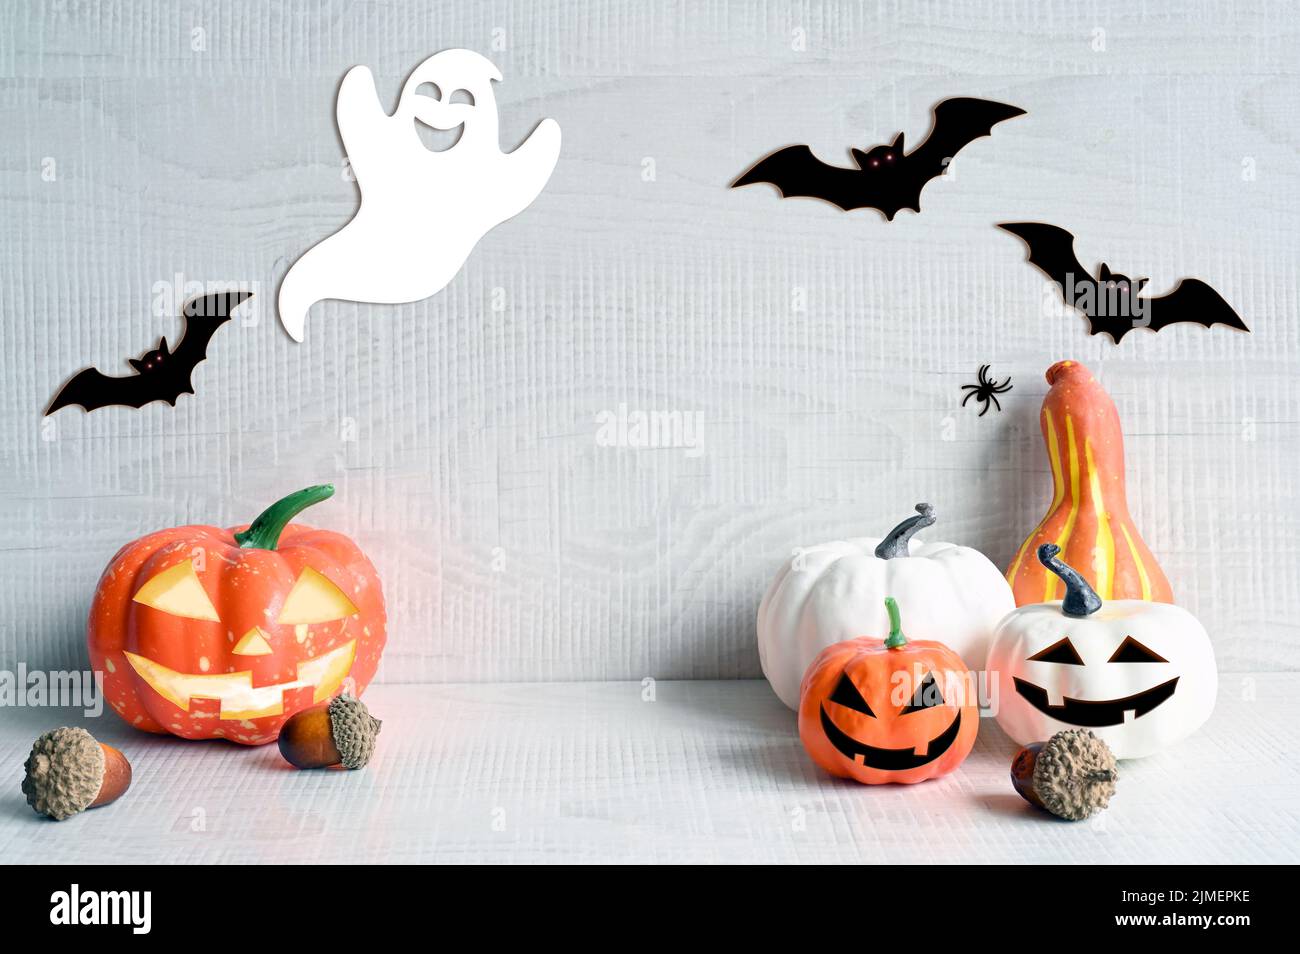 Decoraciones de Halloween sobre fondo gris pastel. Concepto de Halloween. Calabaza, araña, murciélago y fantasma. Foto de stock